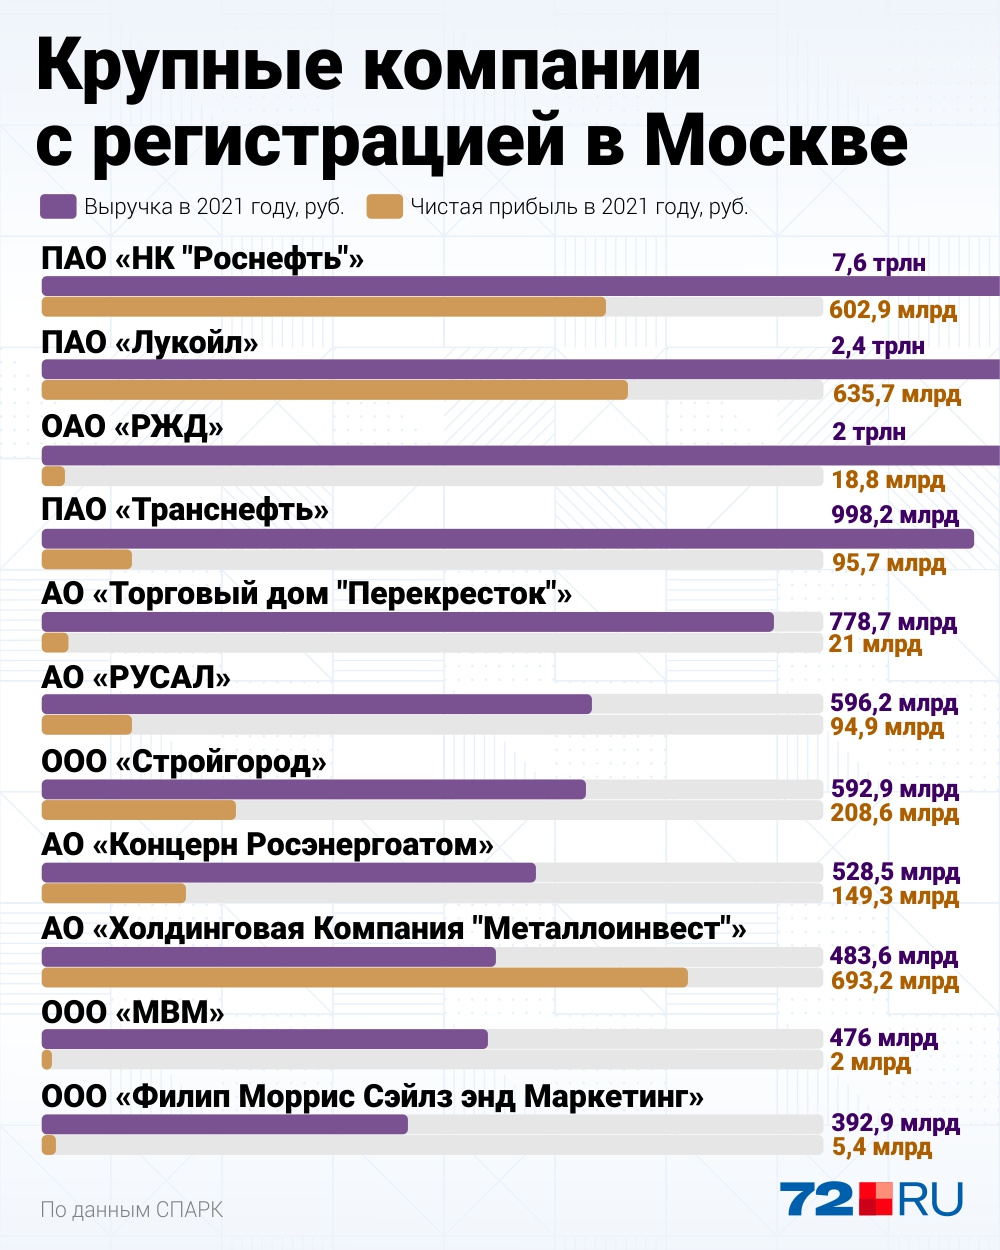 На инфографике представлены крупные компании, которые зарегистрированы в Москве